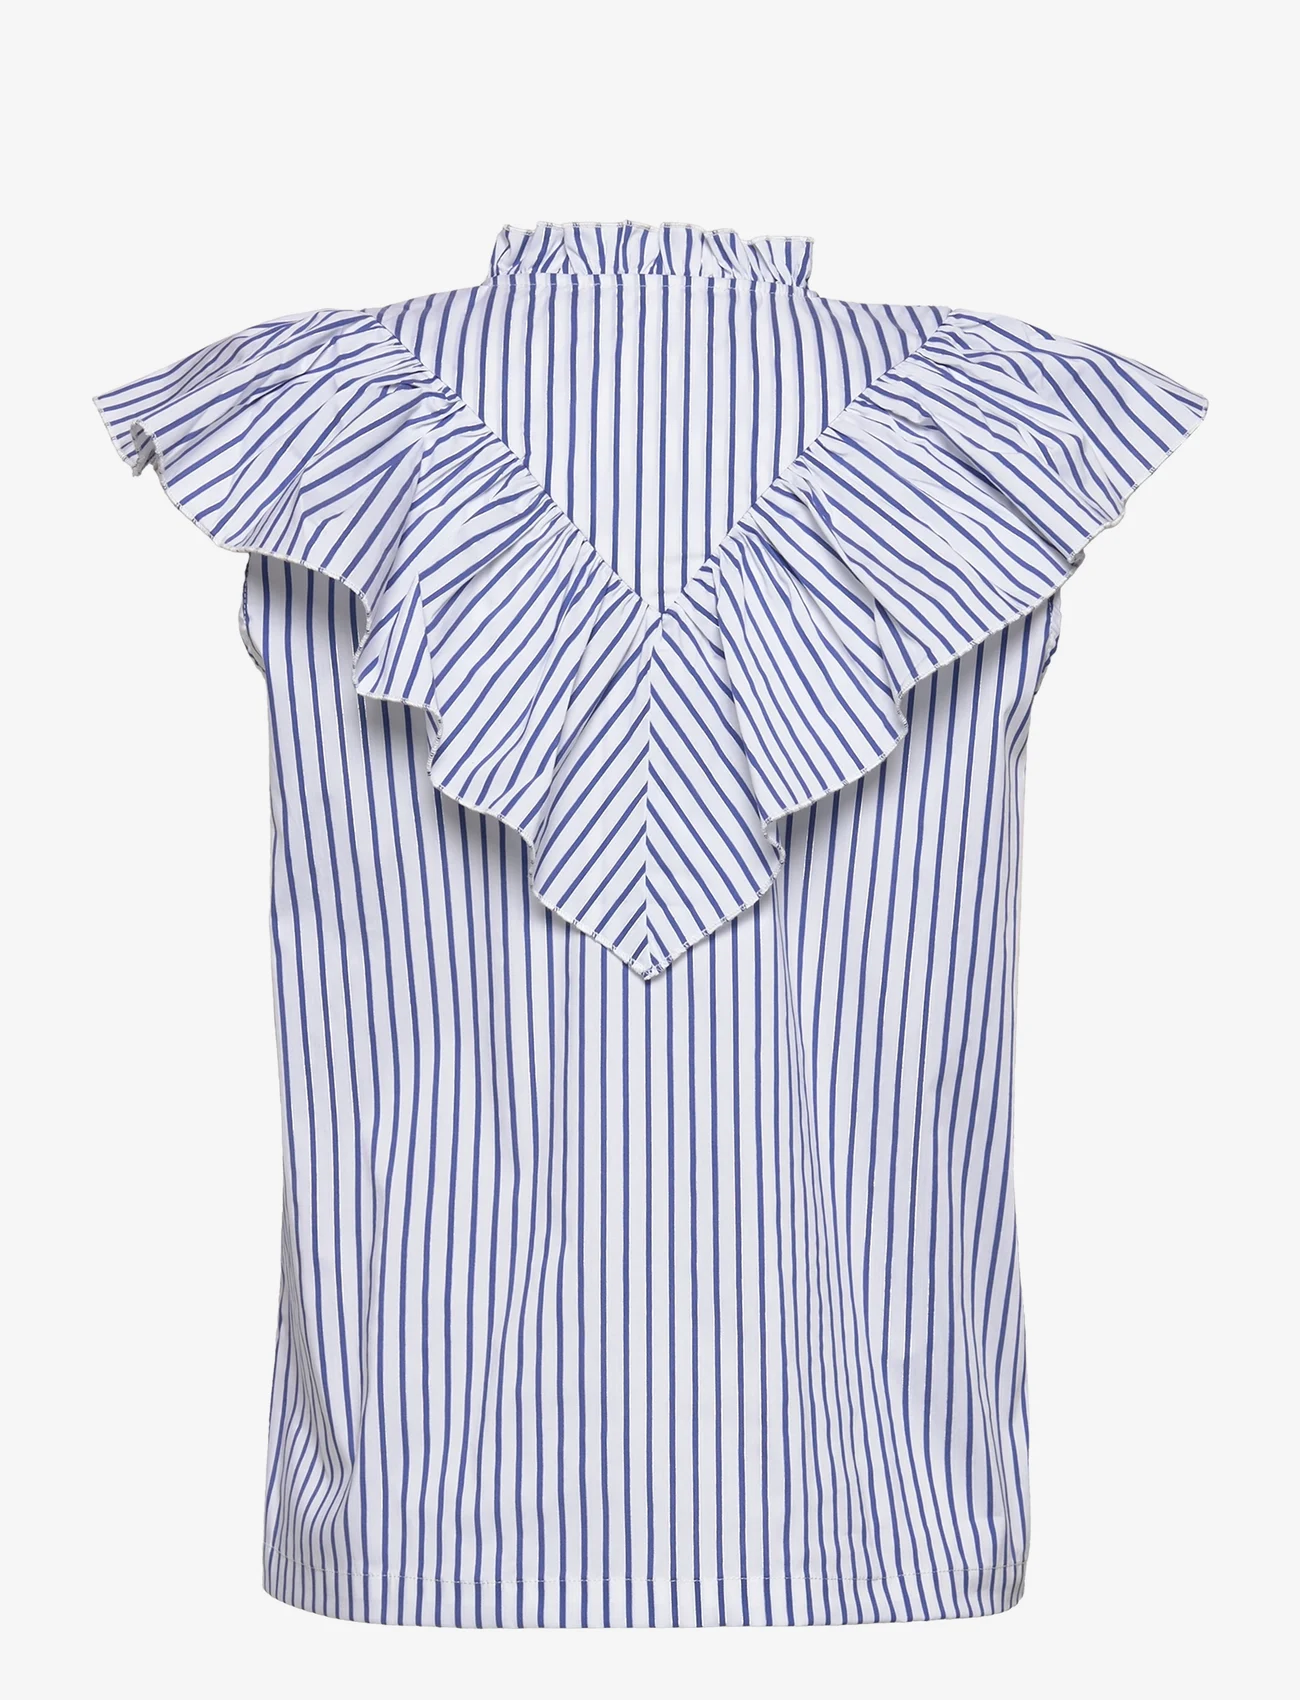 Rosemunde - Top - blouses zonder mouwen - white blue stripe - 1